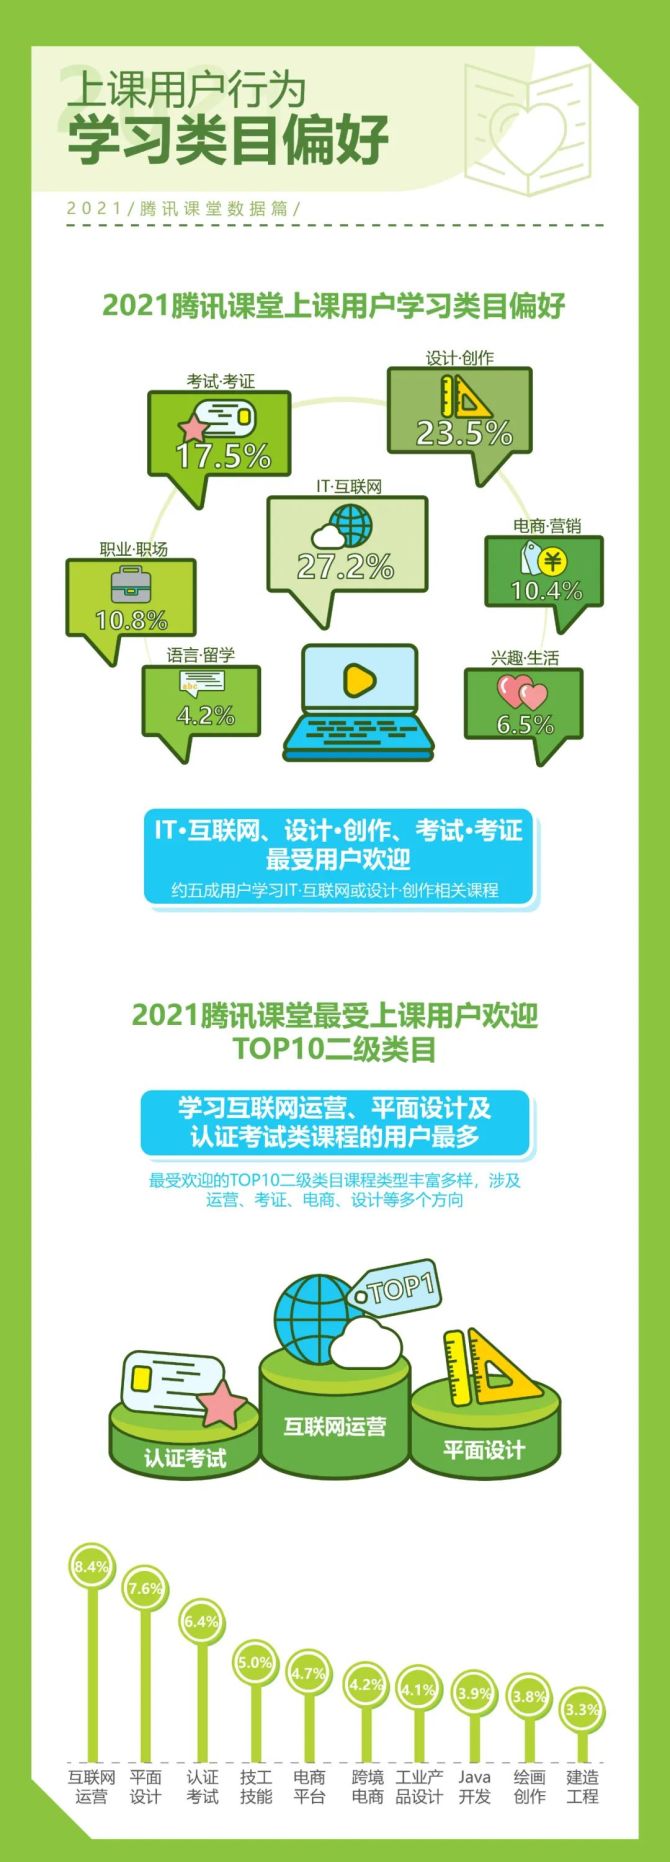 新知达人, 2022年中国综合性终身教育平台用户大数据报告—腾讯课堂数据篇